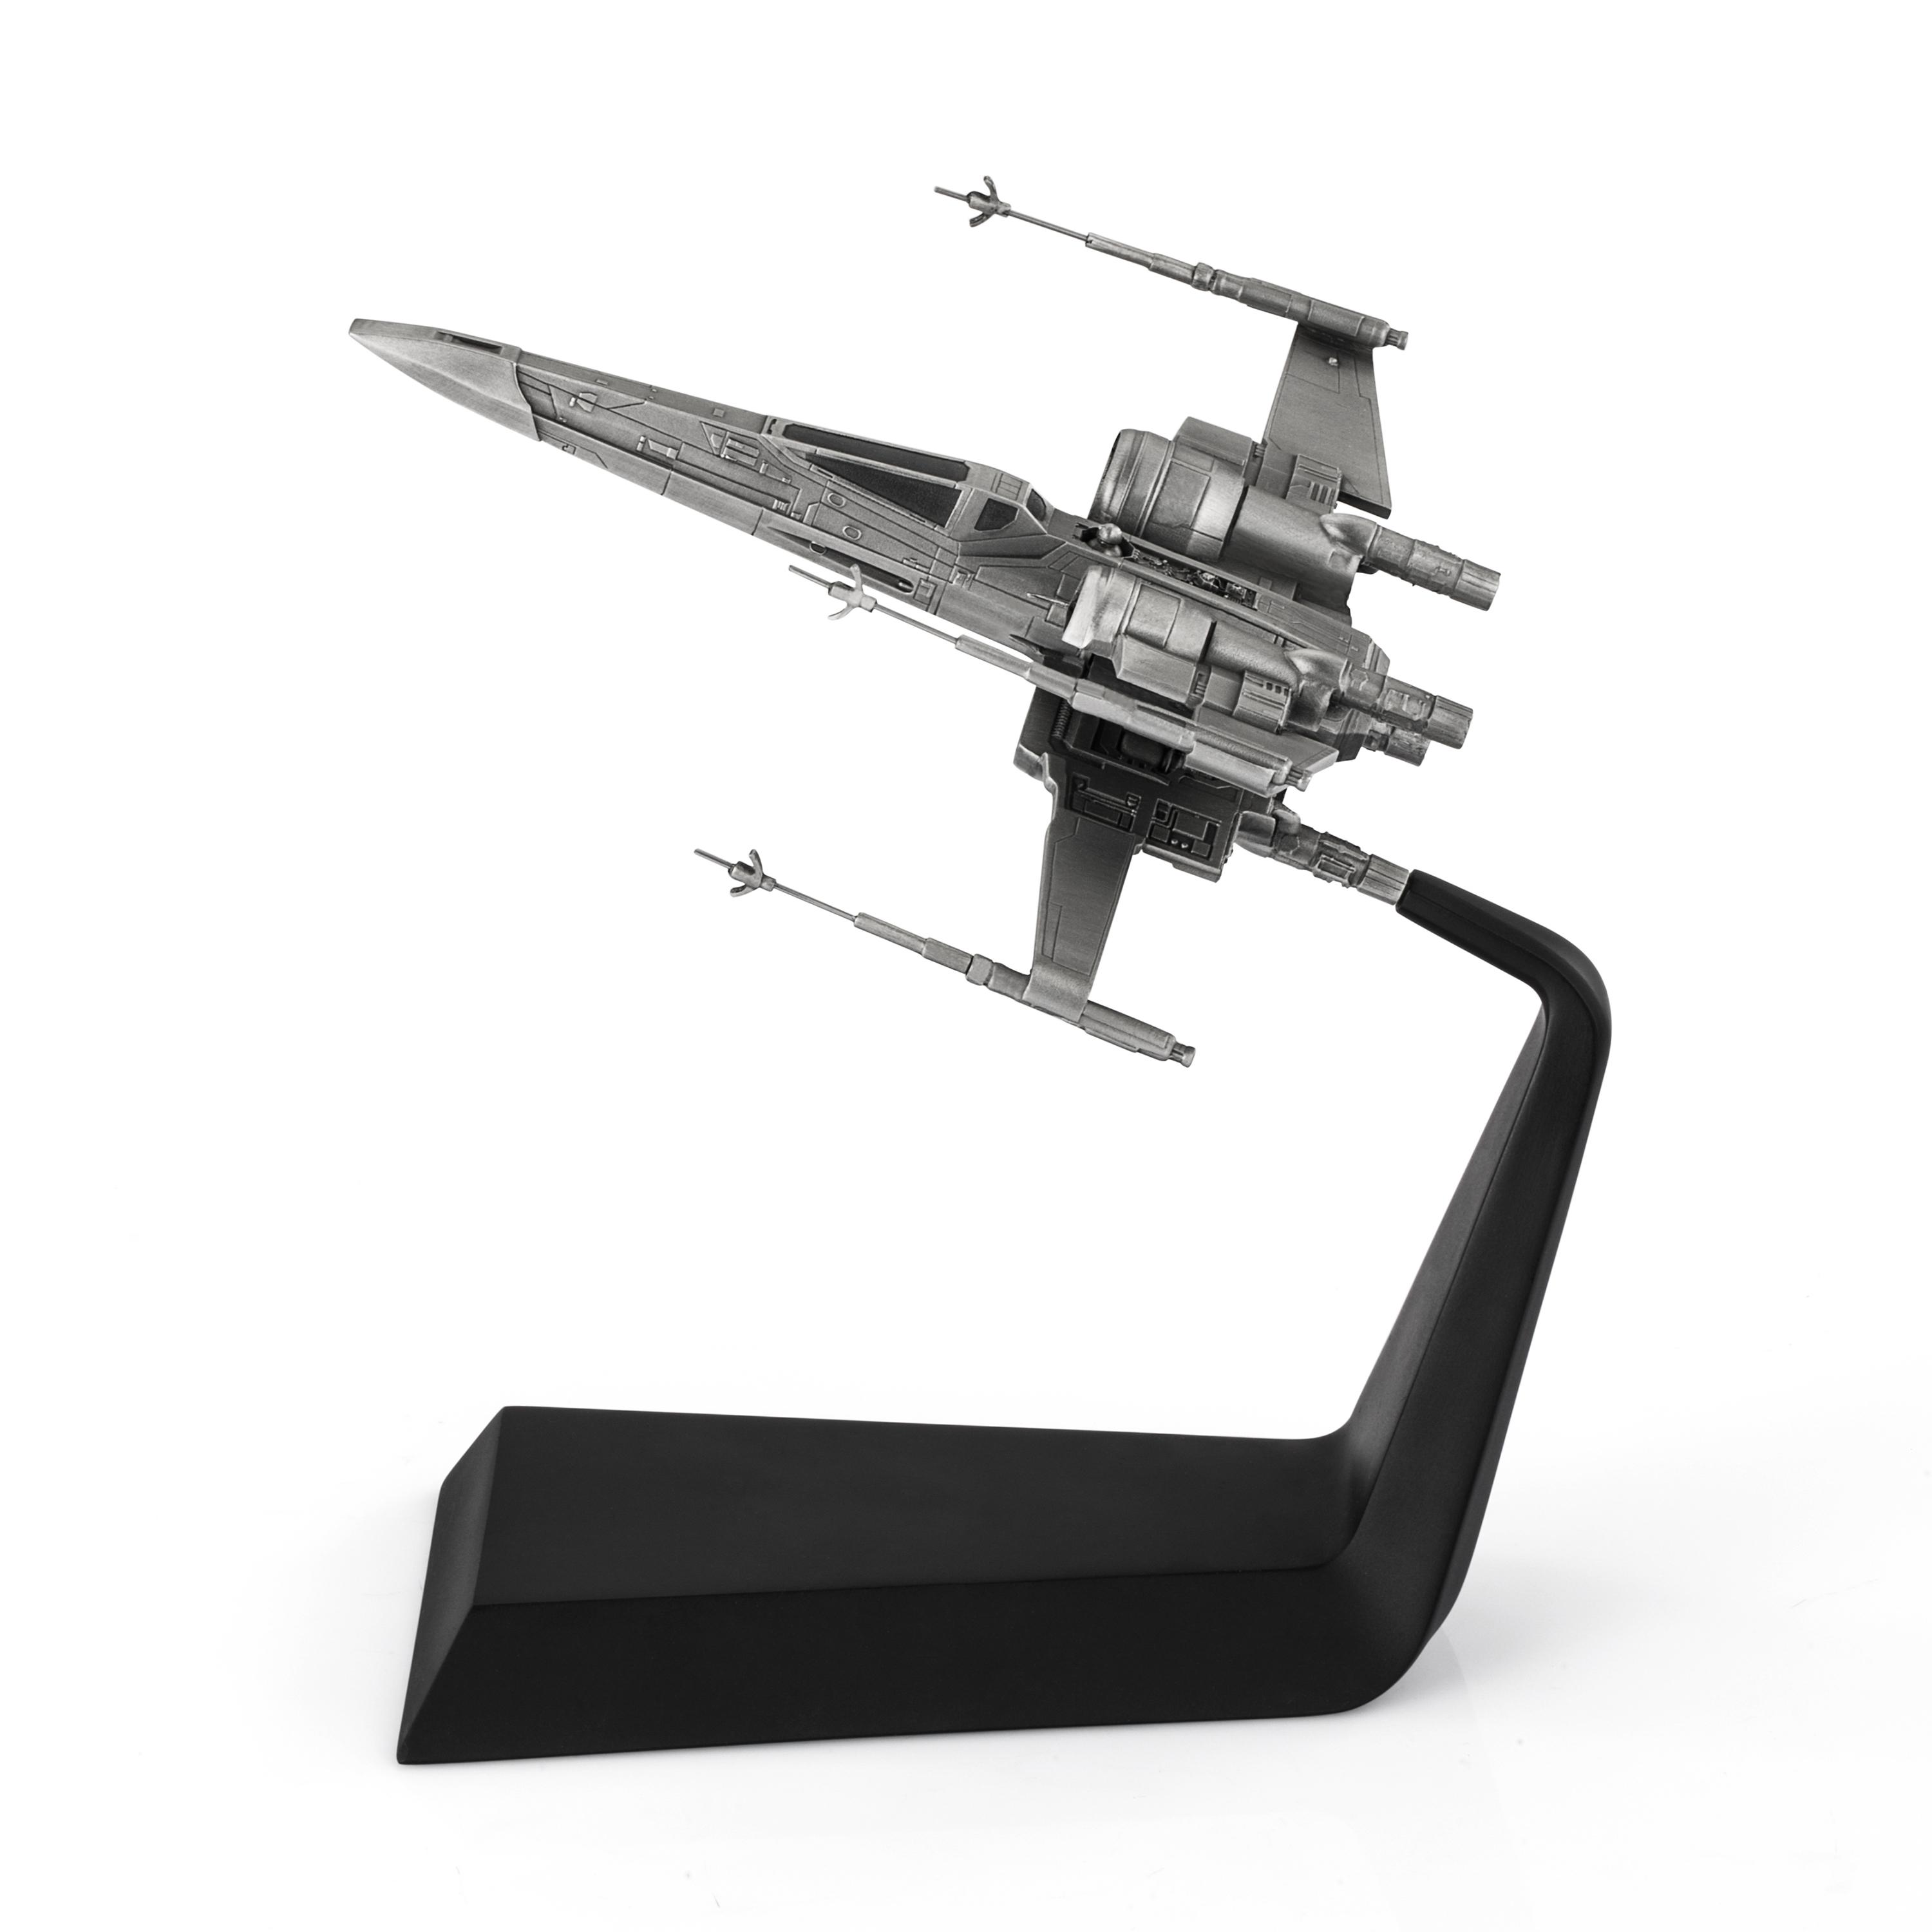 X-Wing model